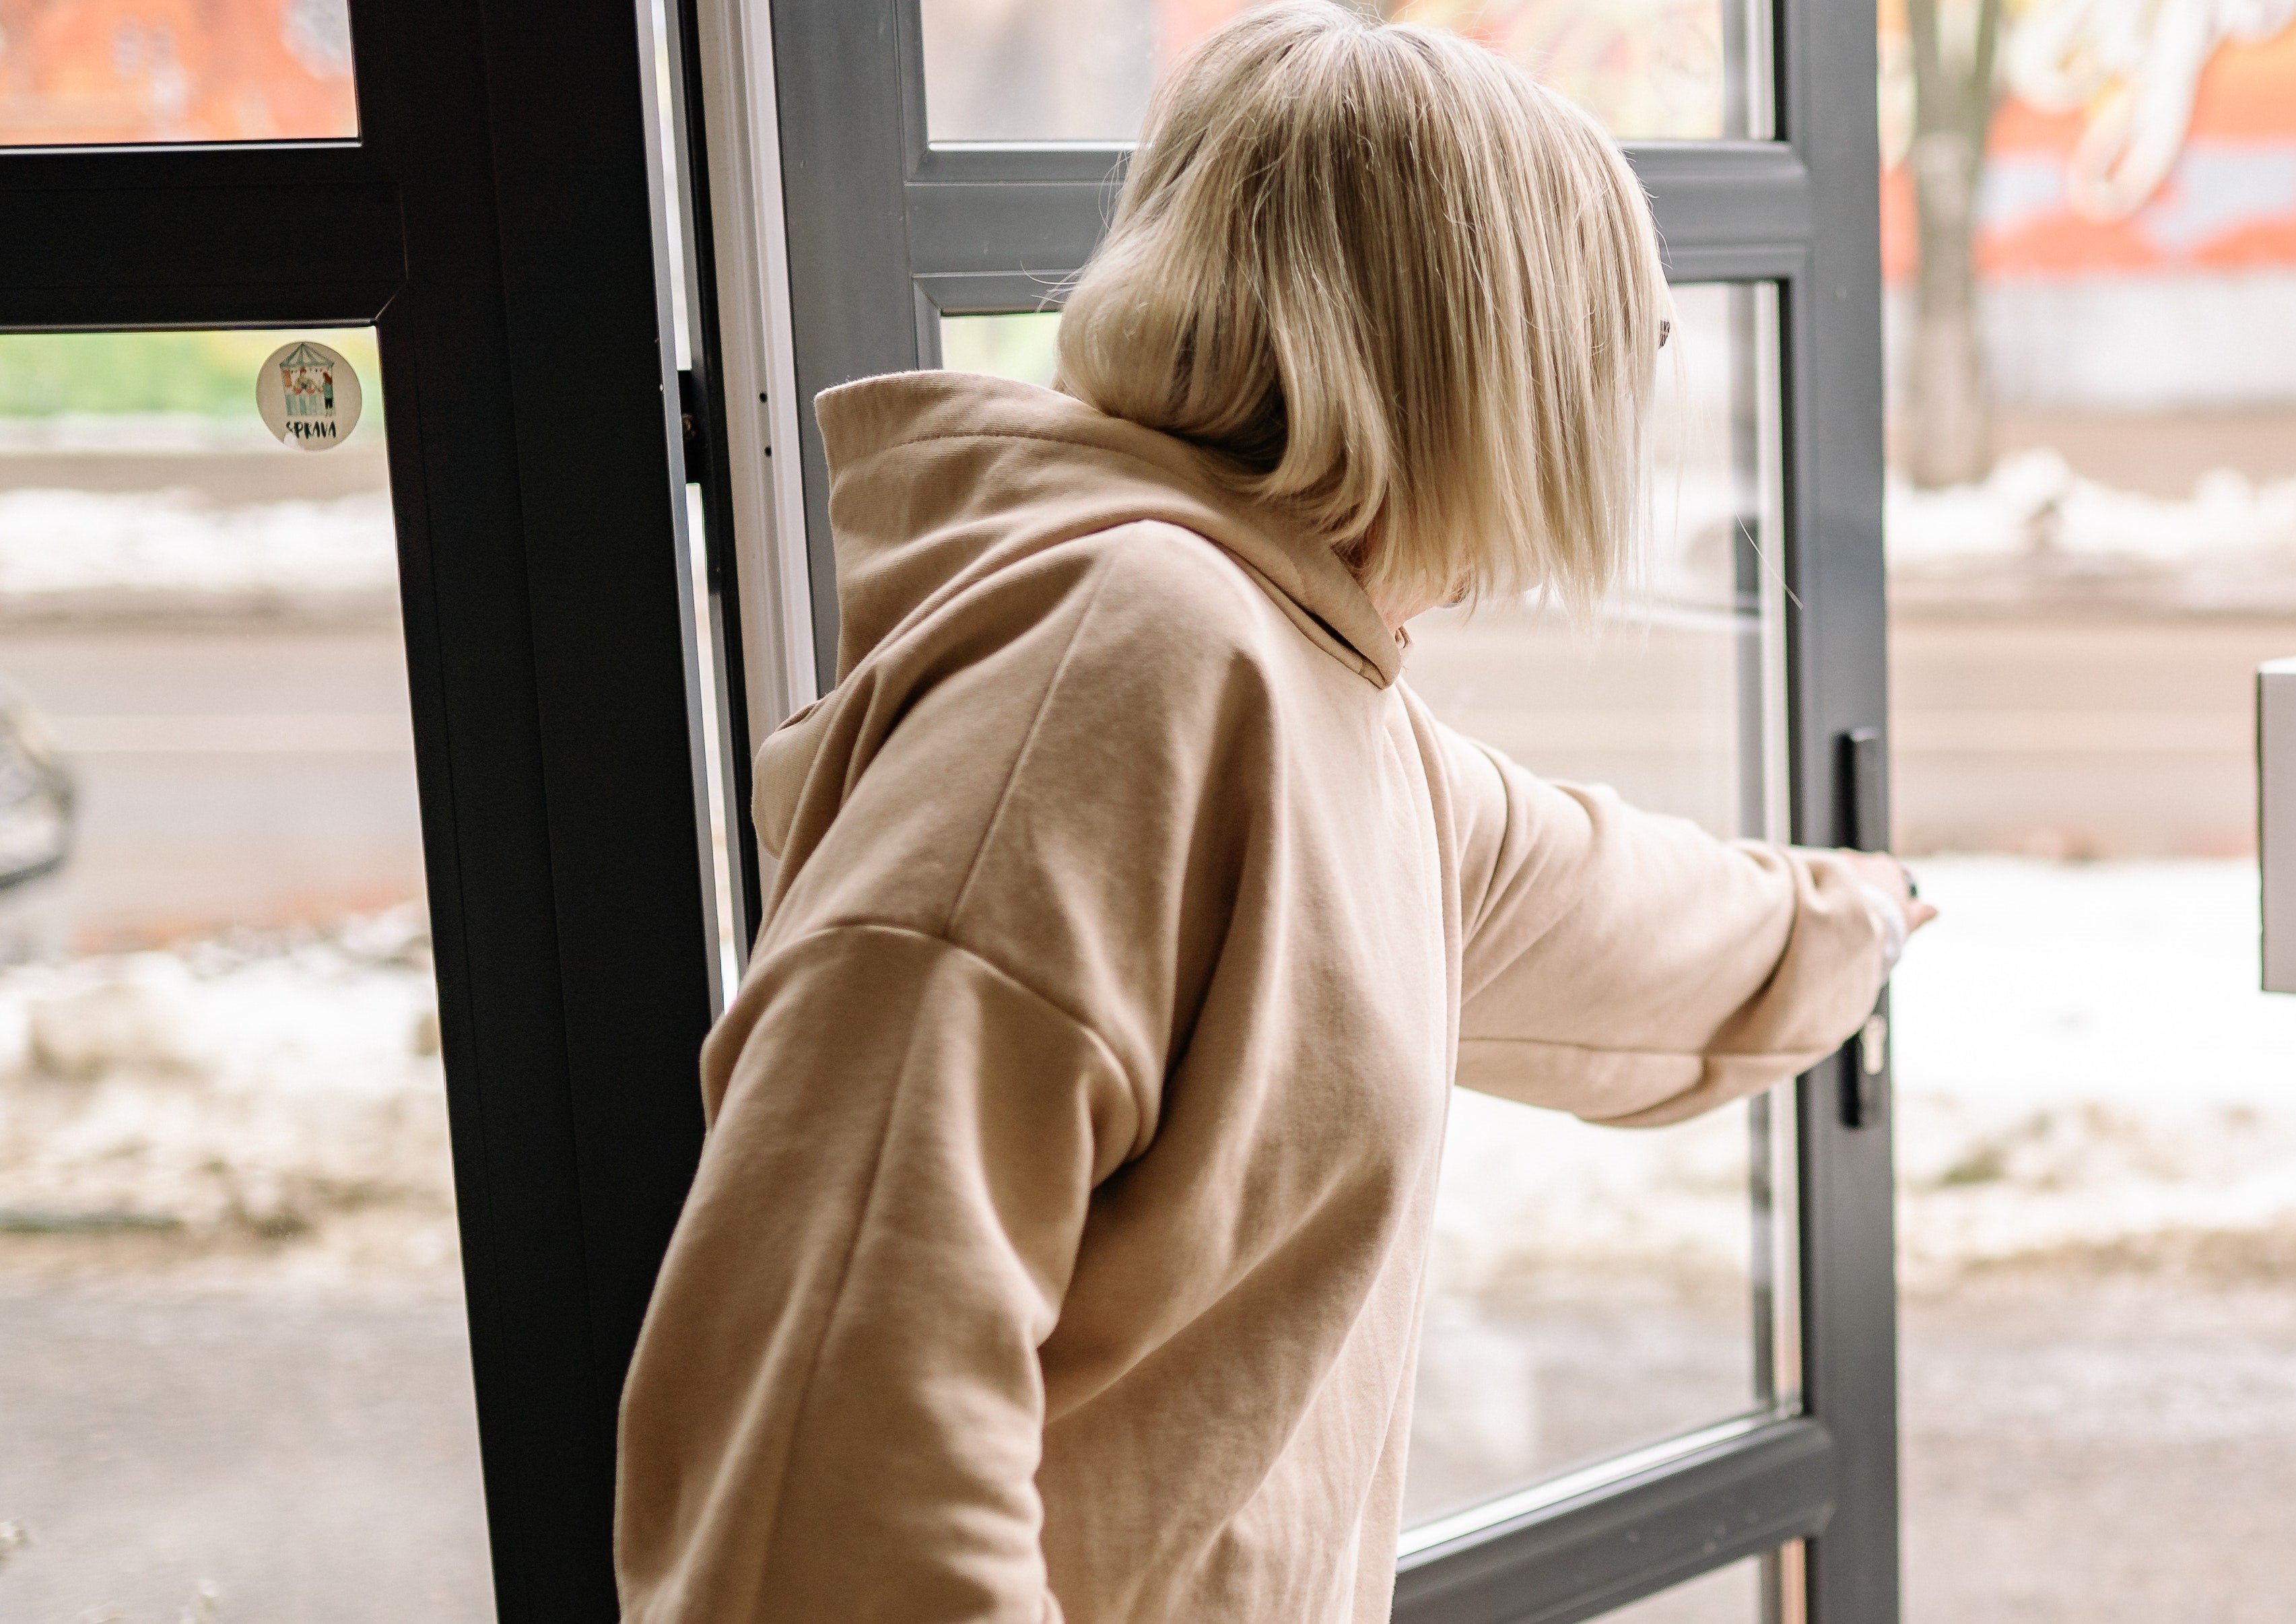 A woman opening the door | Source: Pexels